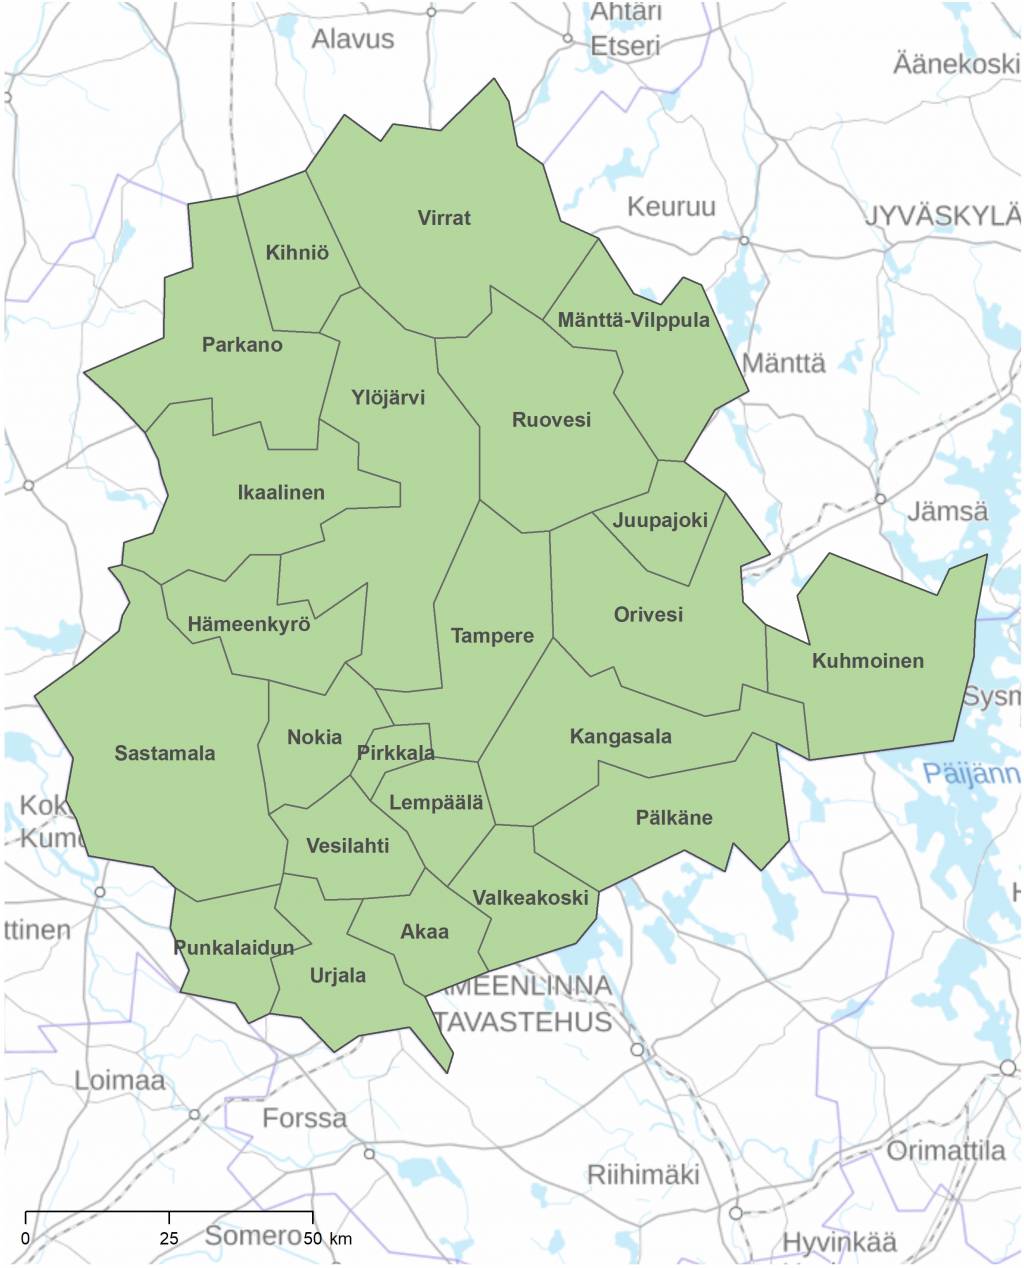 Pirkanmaan kuntarajakartassa on kuvattu vihreällä värillä kunnat. Kuhmoinen on maakunnan itäisin kunta ja se tulee ulokkeena maakunnasta kohti Päijännettä.